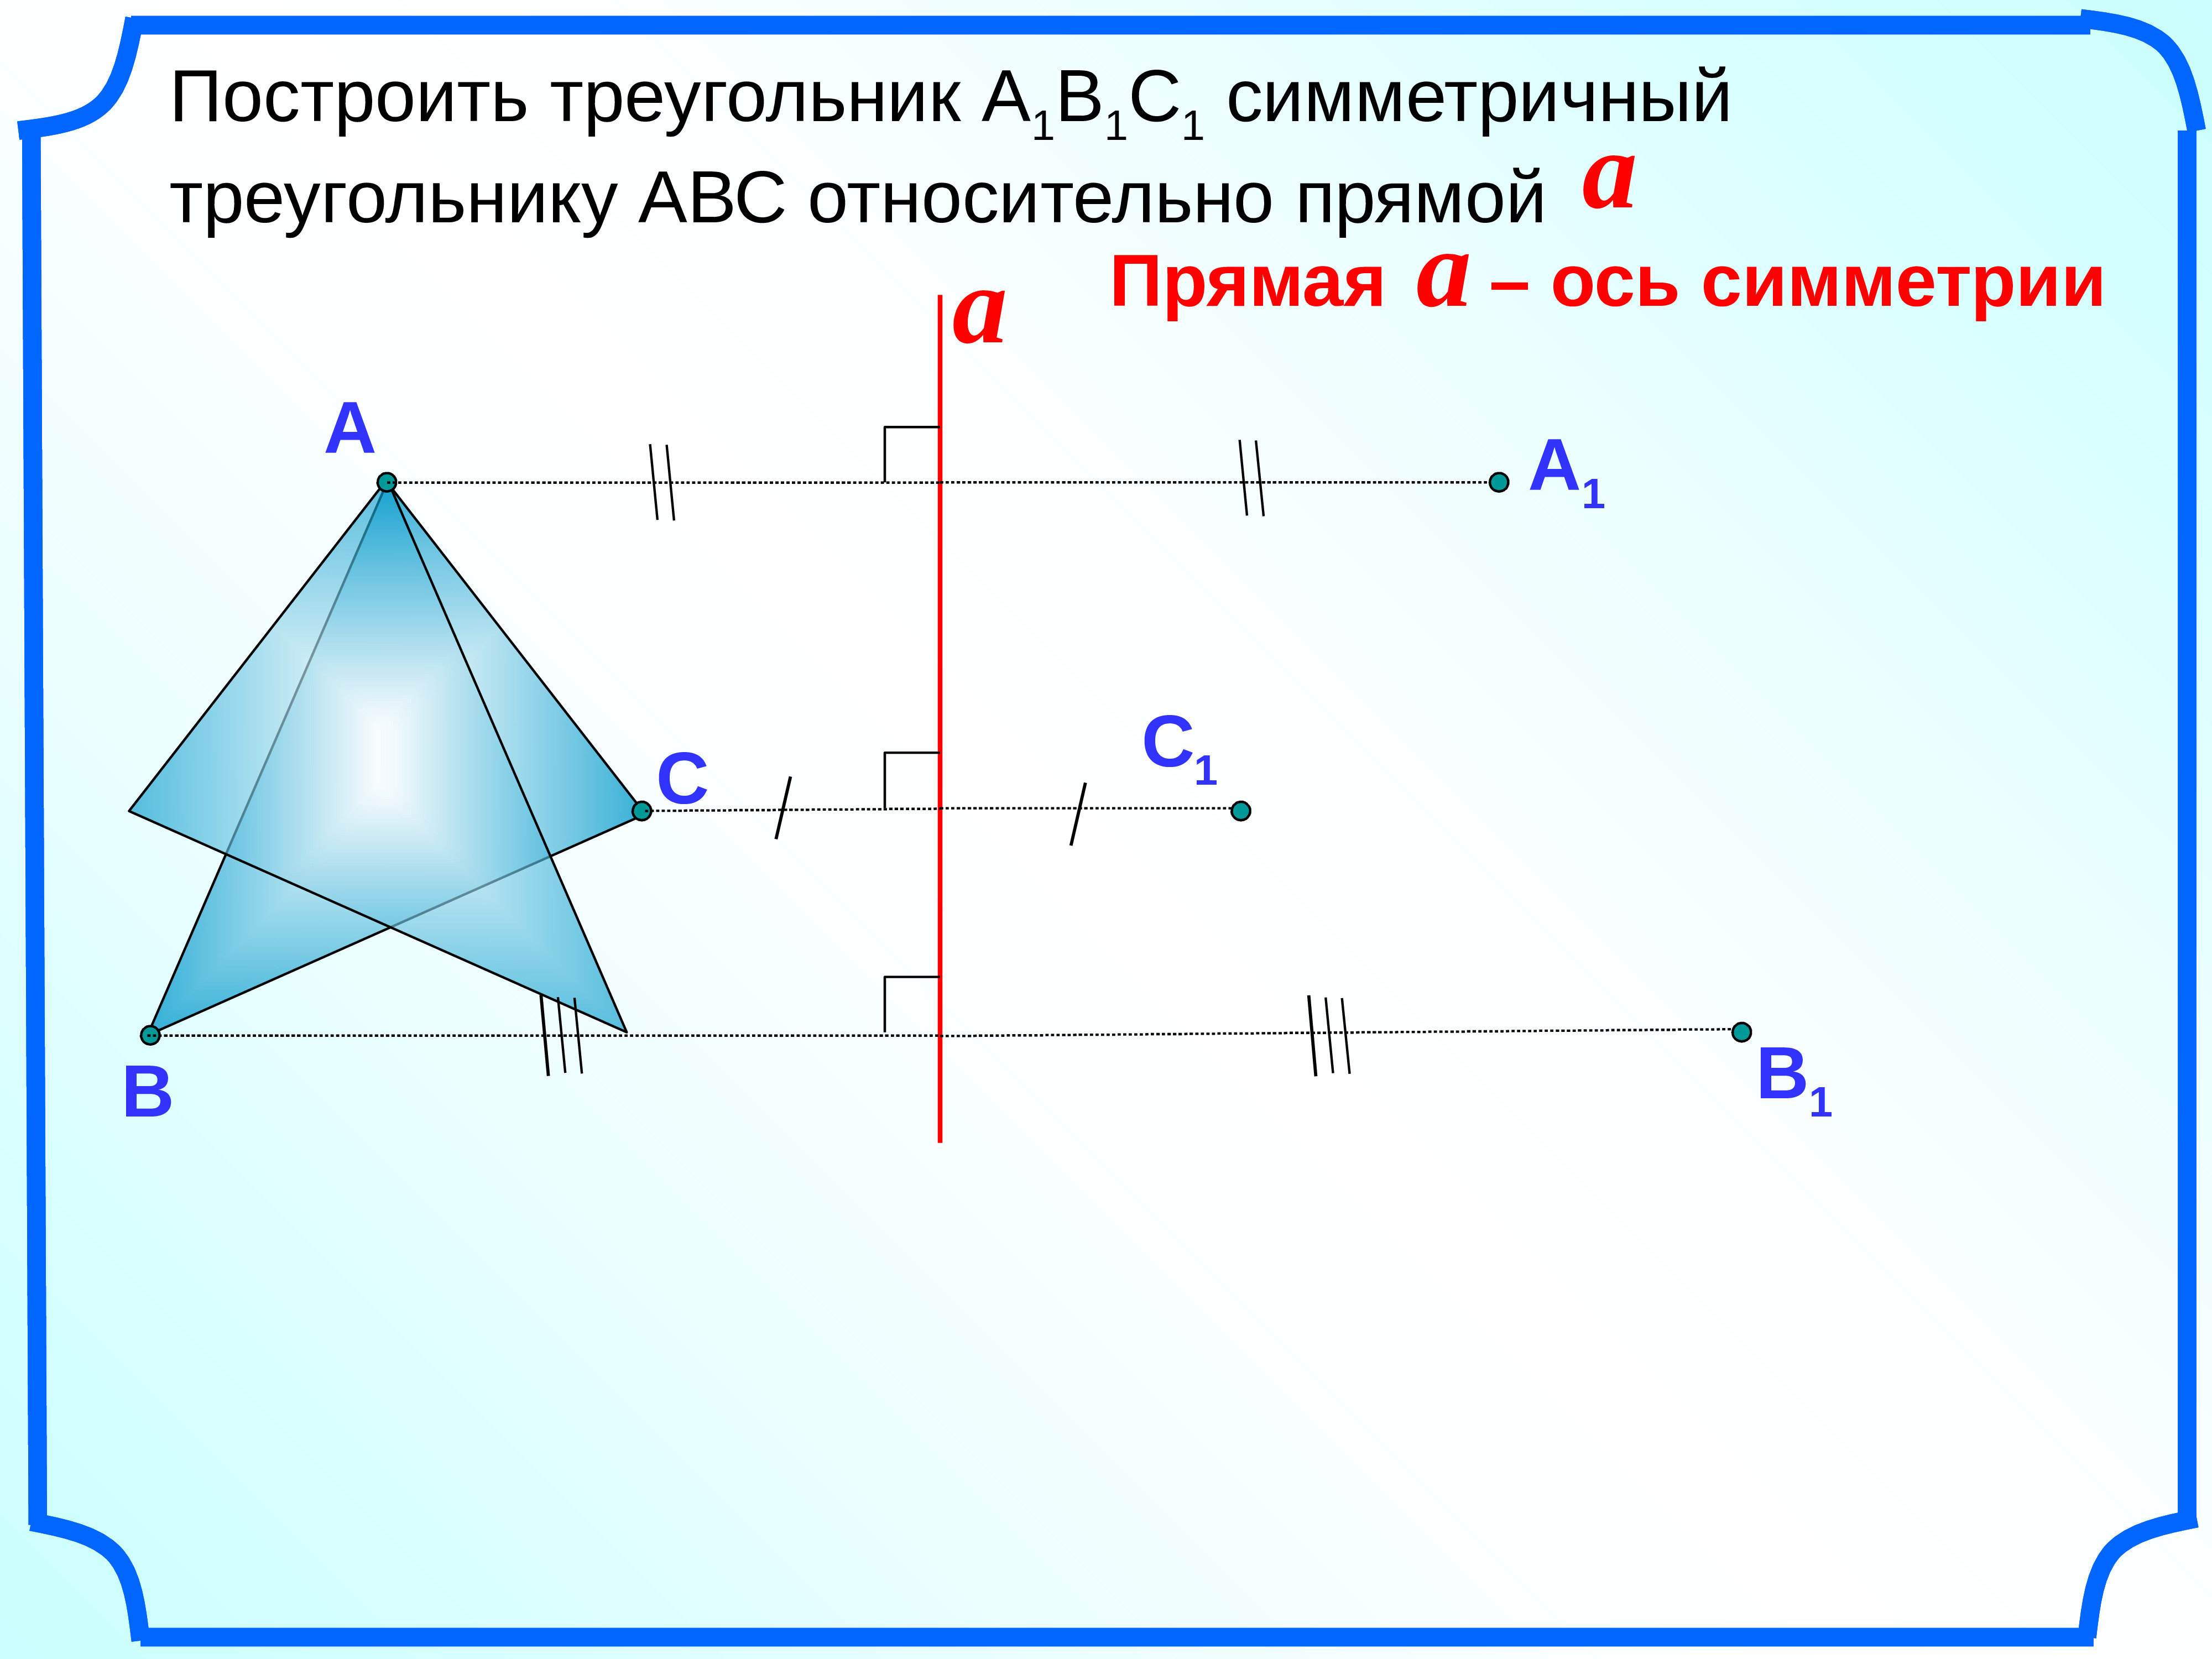 Как построить симметричный треугольник относительно прямой